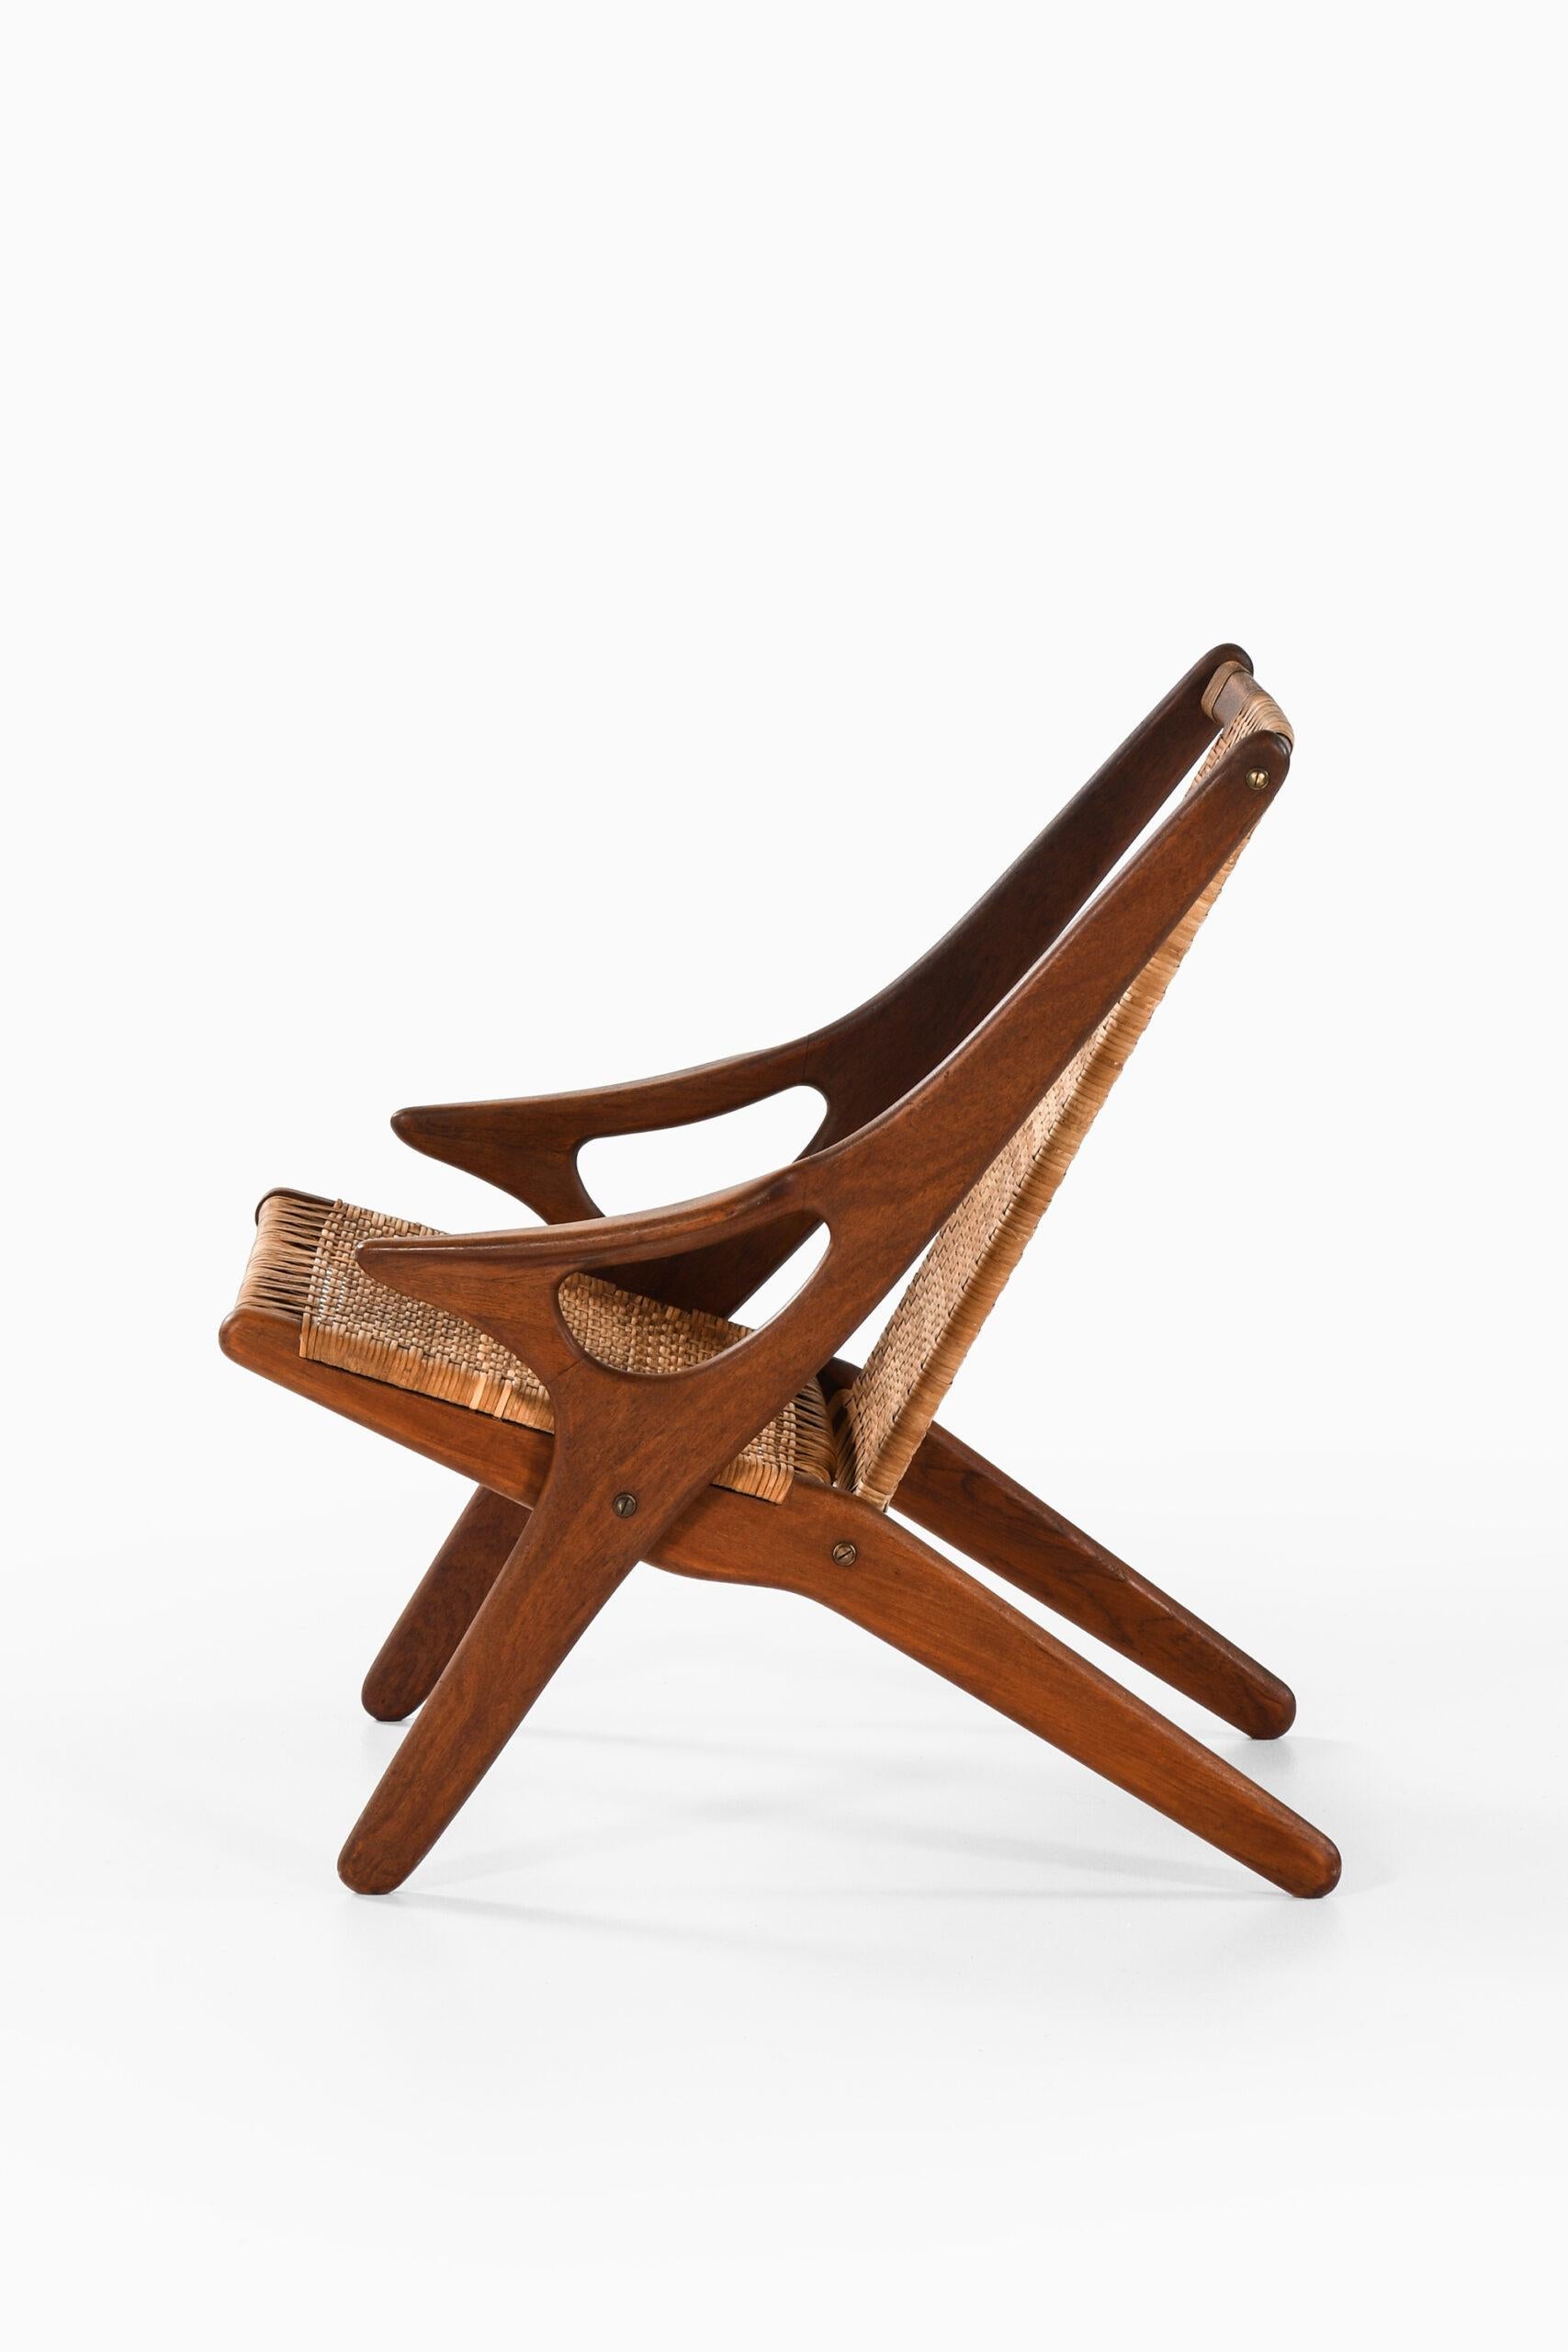 Rare easy chair designed by Arne Hovmand-Olsen. Produced by A.R. Klingenberg & Søn in Denmark.